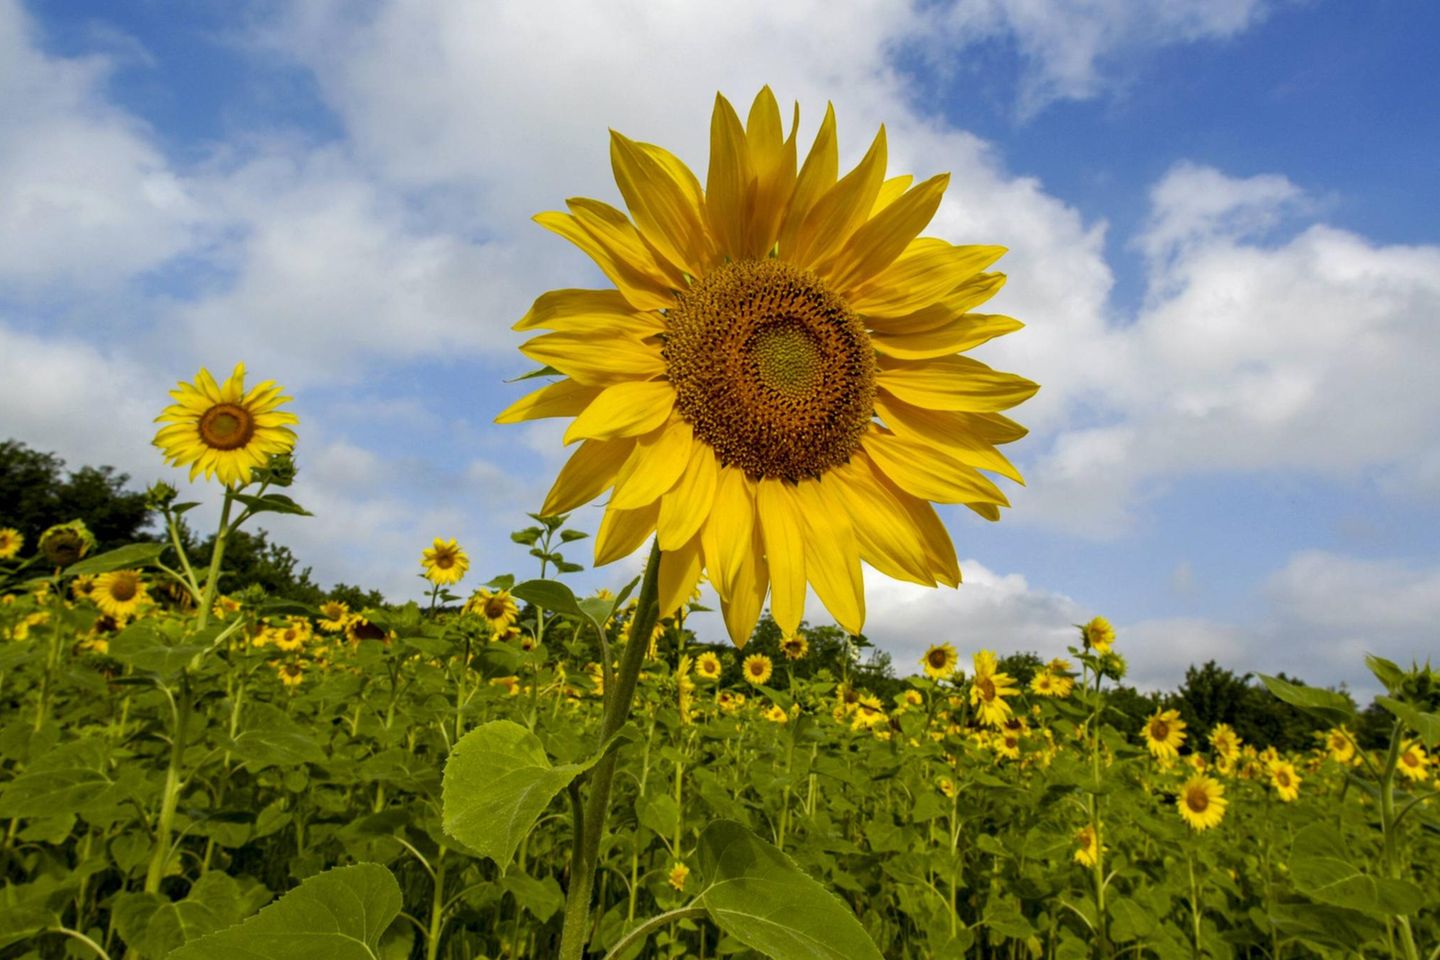 Deutschland deckt nach Angaben des Verbands der ölsaatenverarbeitenden Industrie seinen Bedarf an Sonnenblumenöl zu 94 Prozent über Importe.